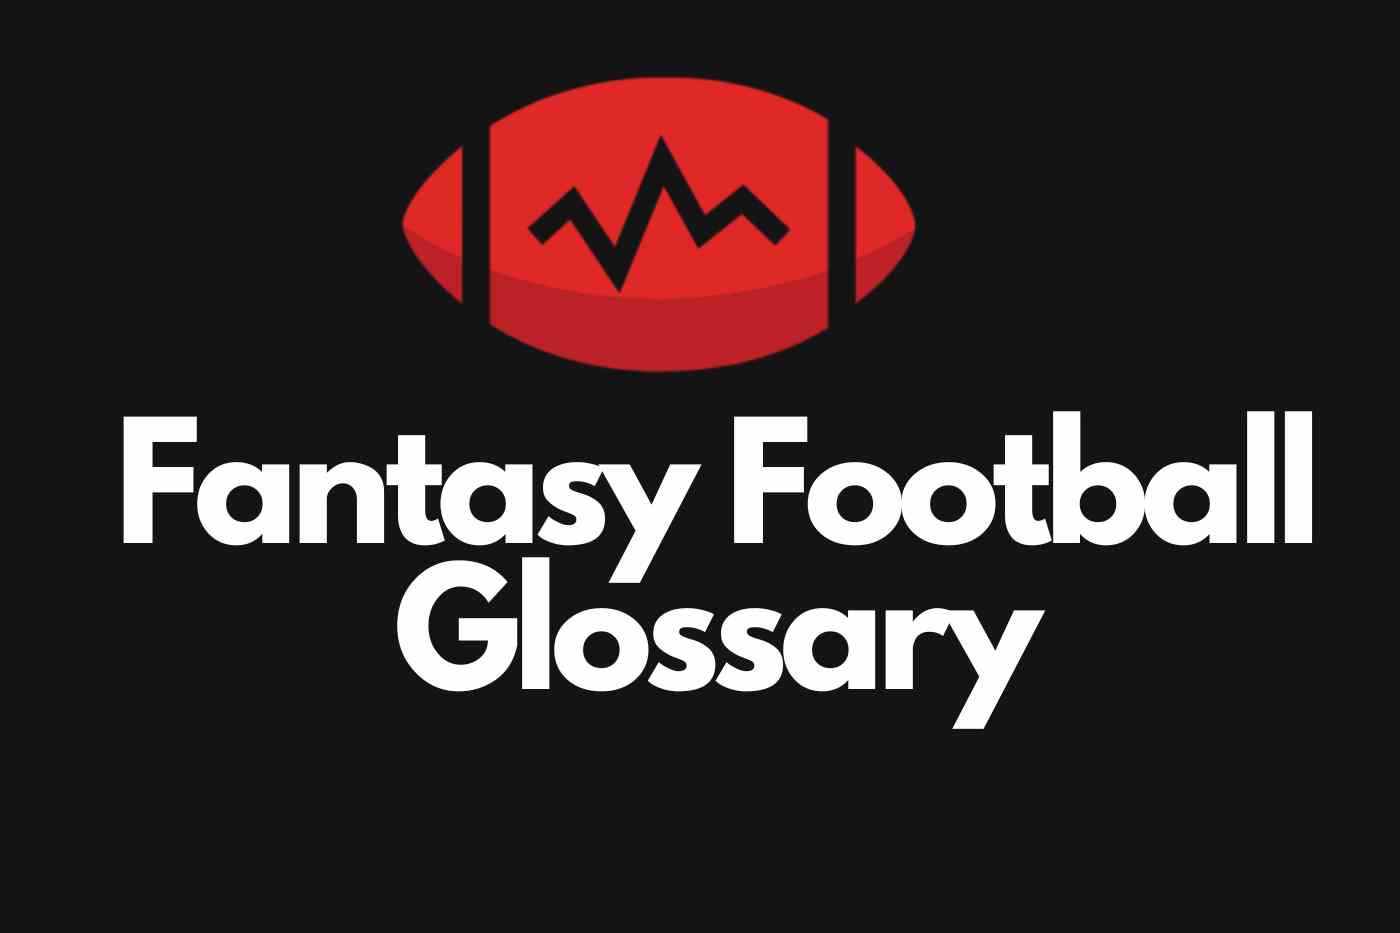 Fantasy Football Glossary